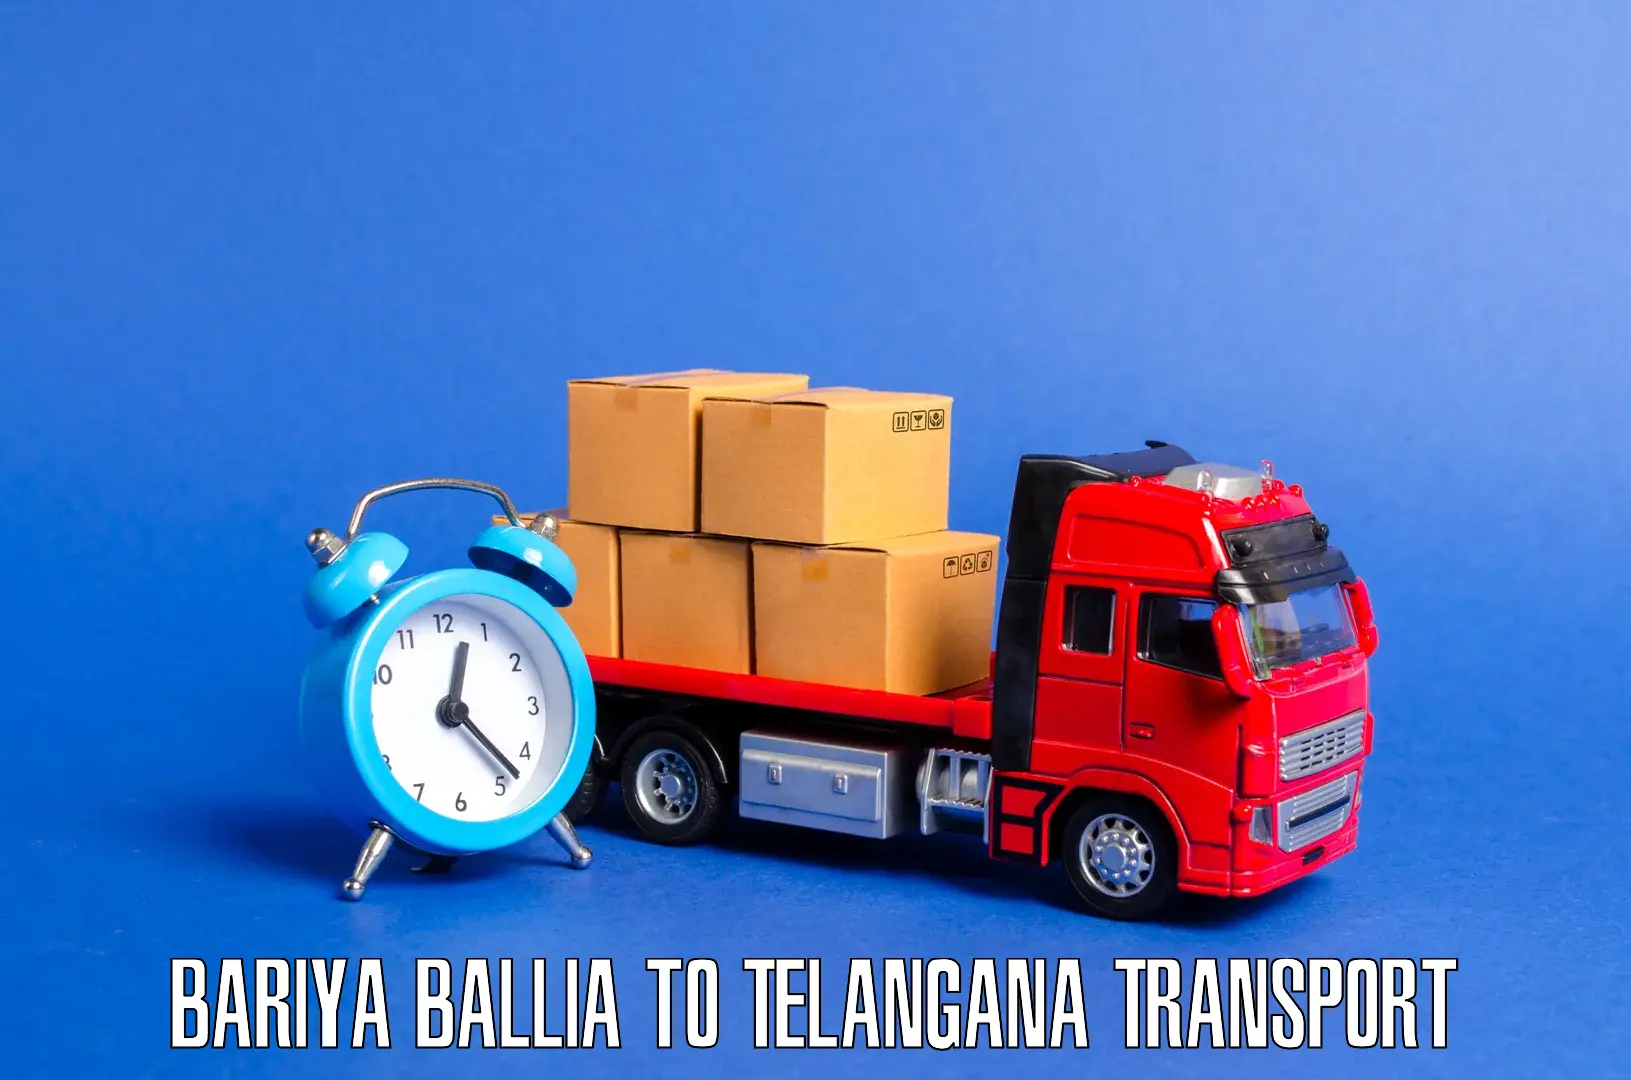 Land transport services Bariya Ballia to Peddapalli